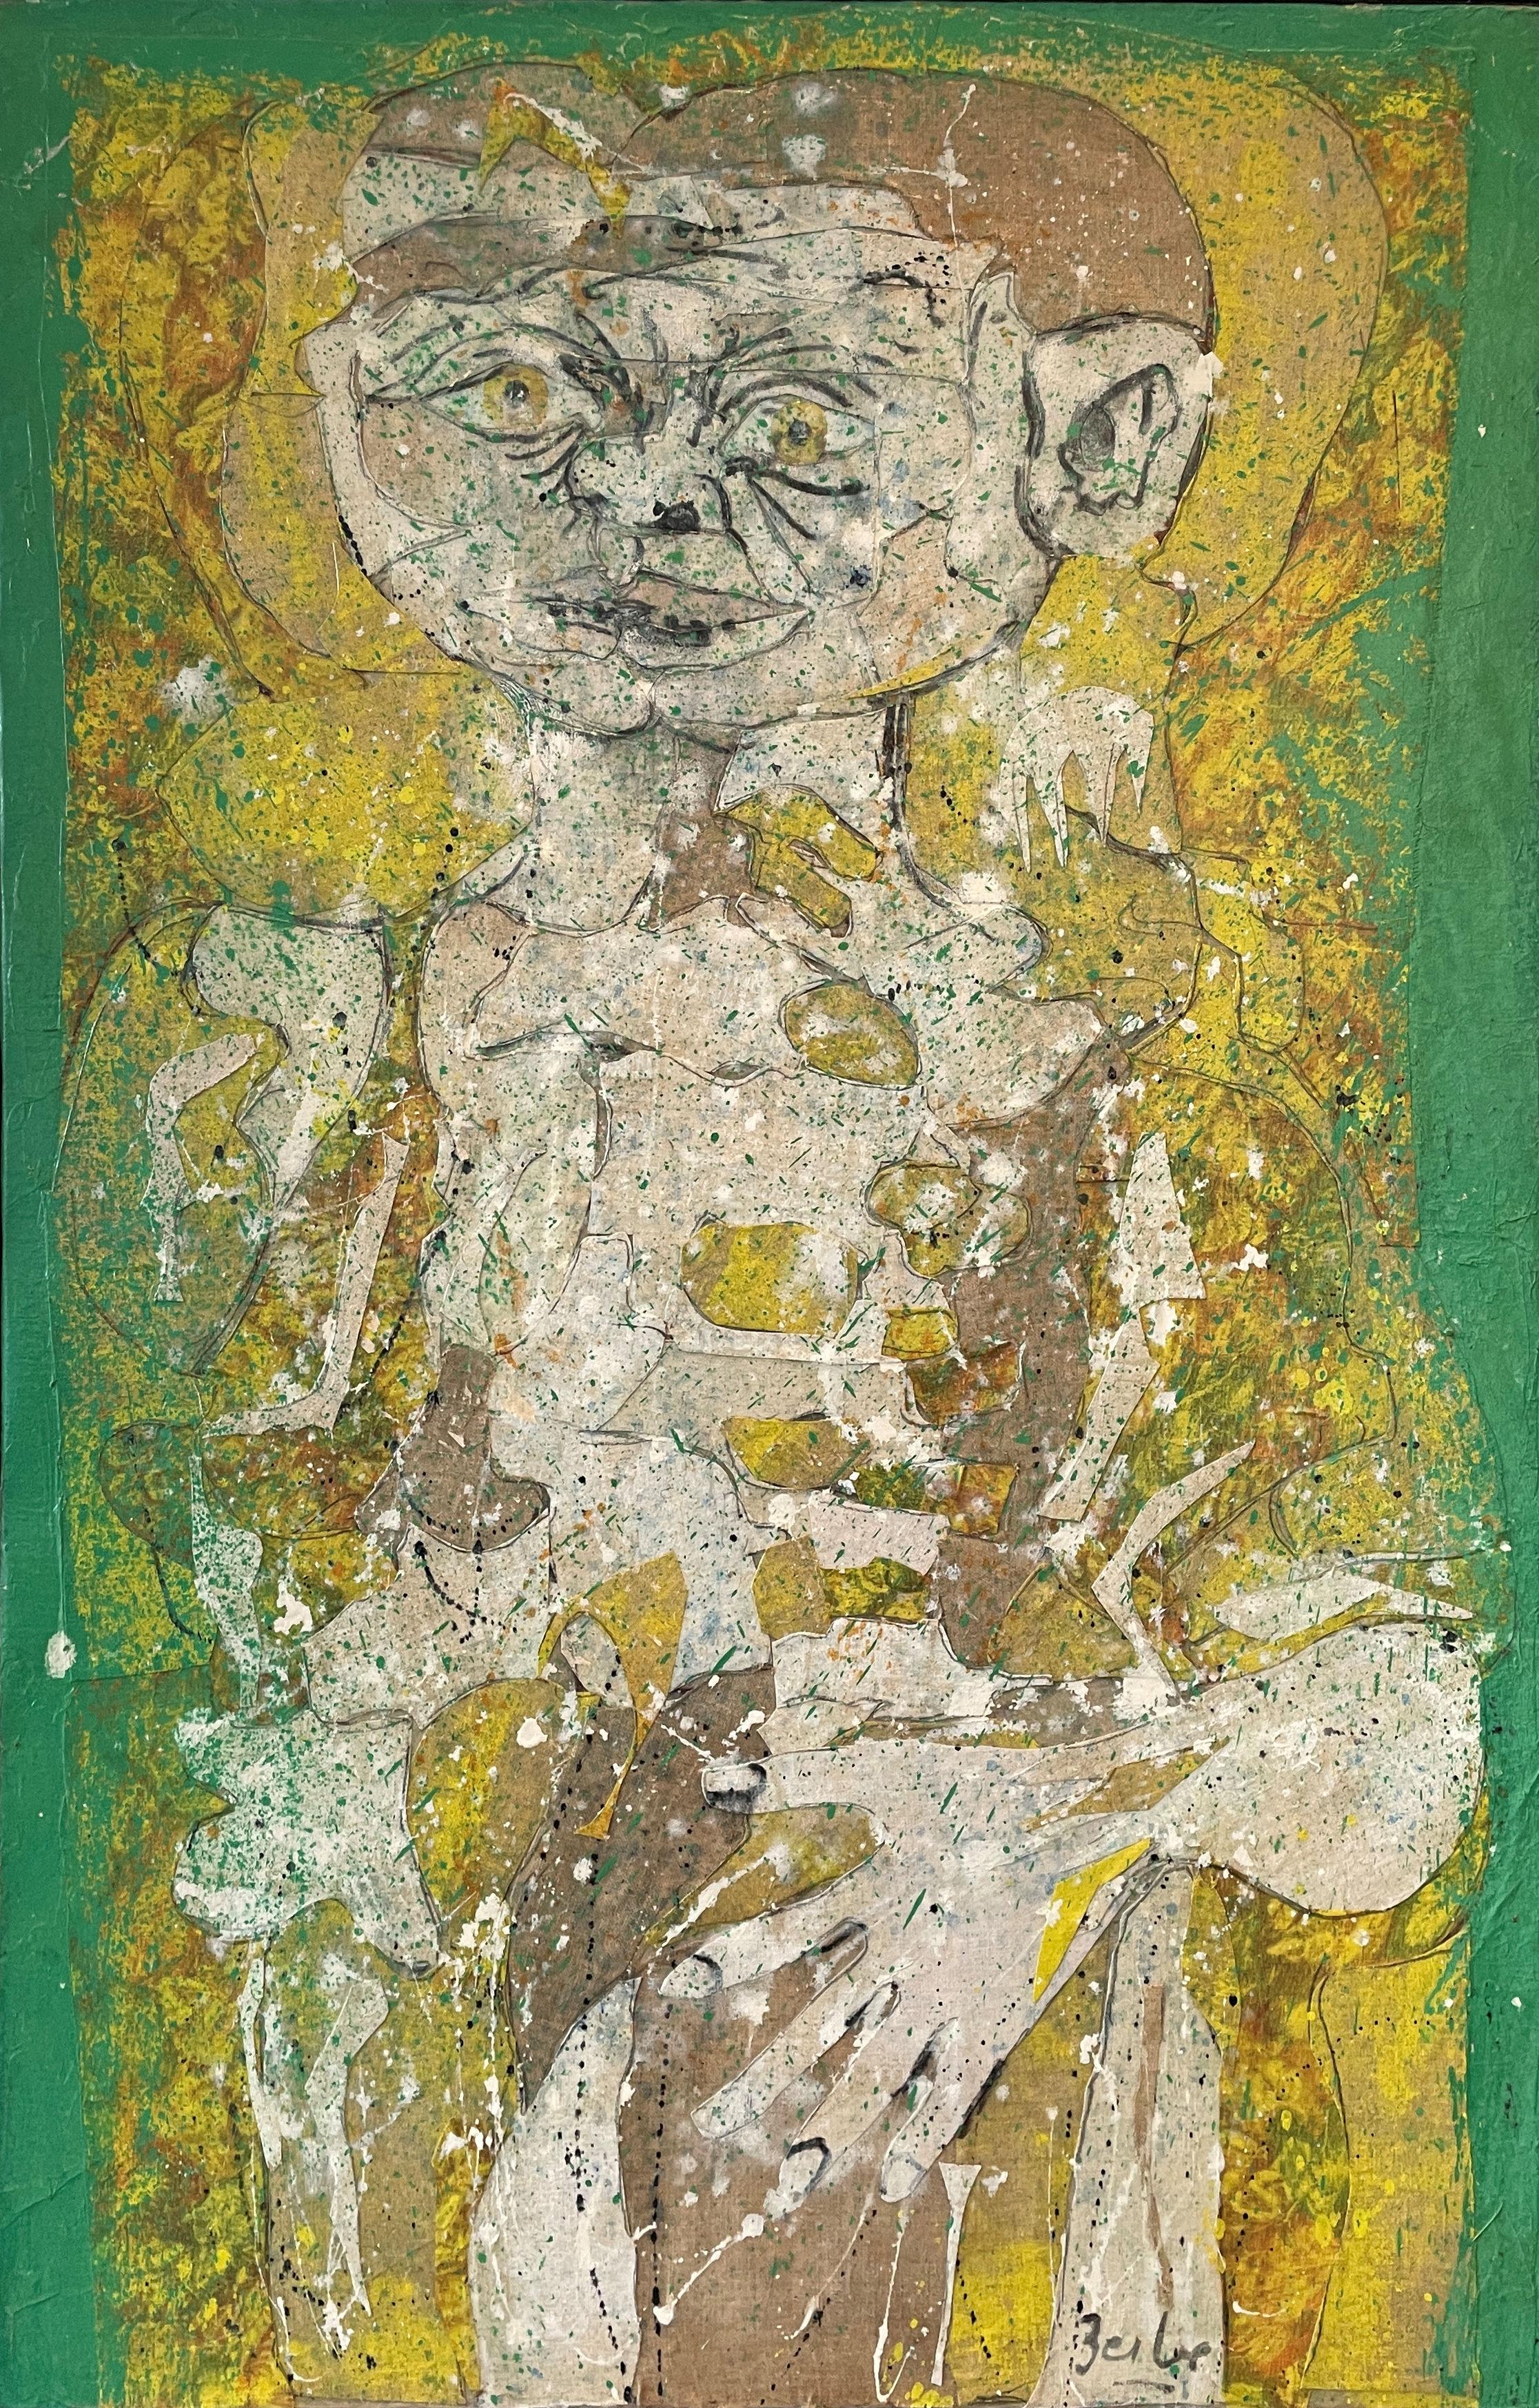 Karl Zerbe (1903 - 1972)
Junge aus Mansos, 1963
Collage und Acryl auf Leinwand
35 x 23 Zoll
Signiert unten rechts

Provenienz:
Lee Nordness Galleries, New York

Karl Zerbe wurde am 16. September 1903 in Berlin, Deutschland, geboren. Die Familie